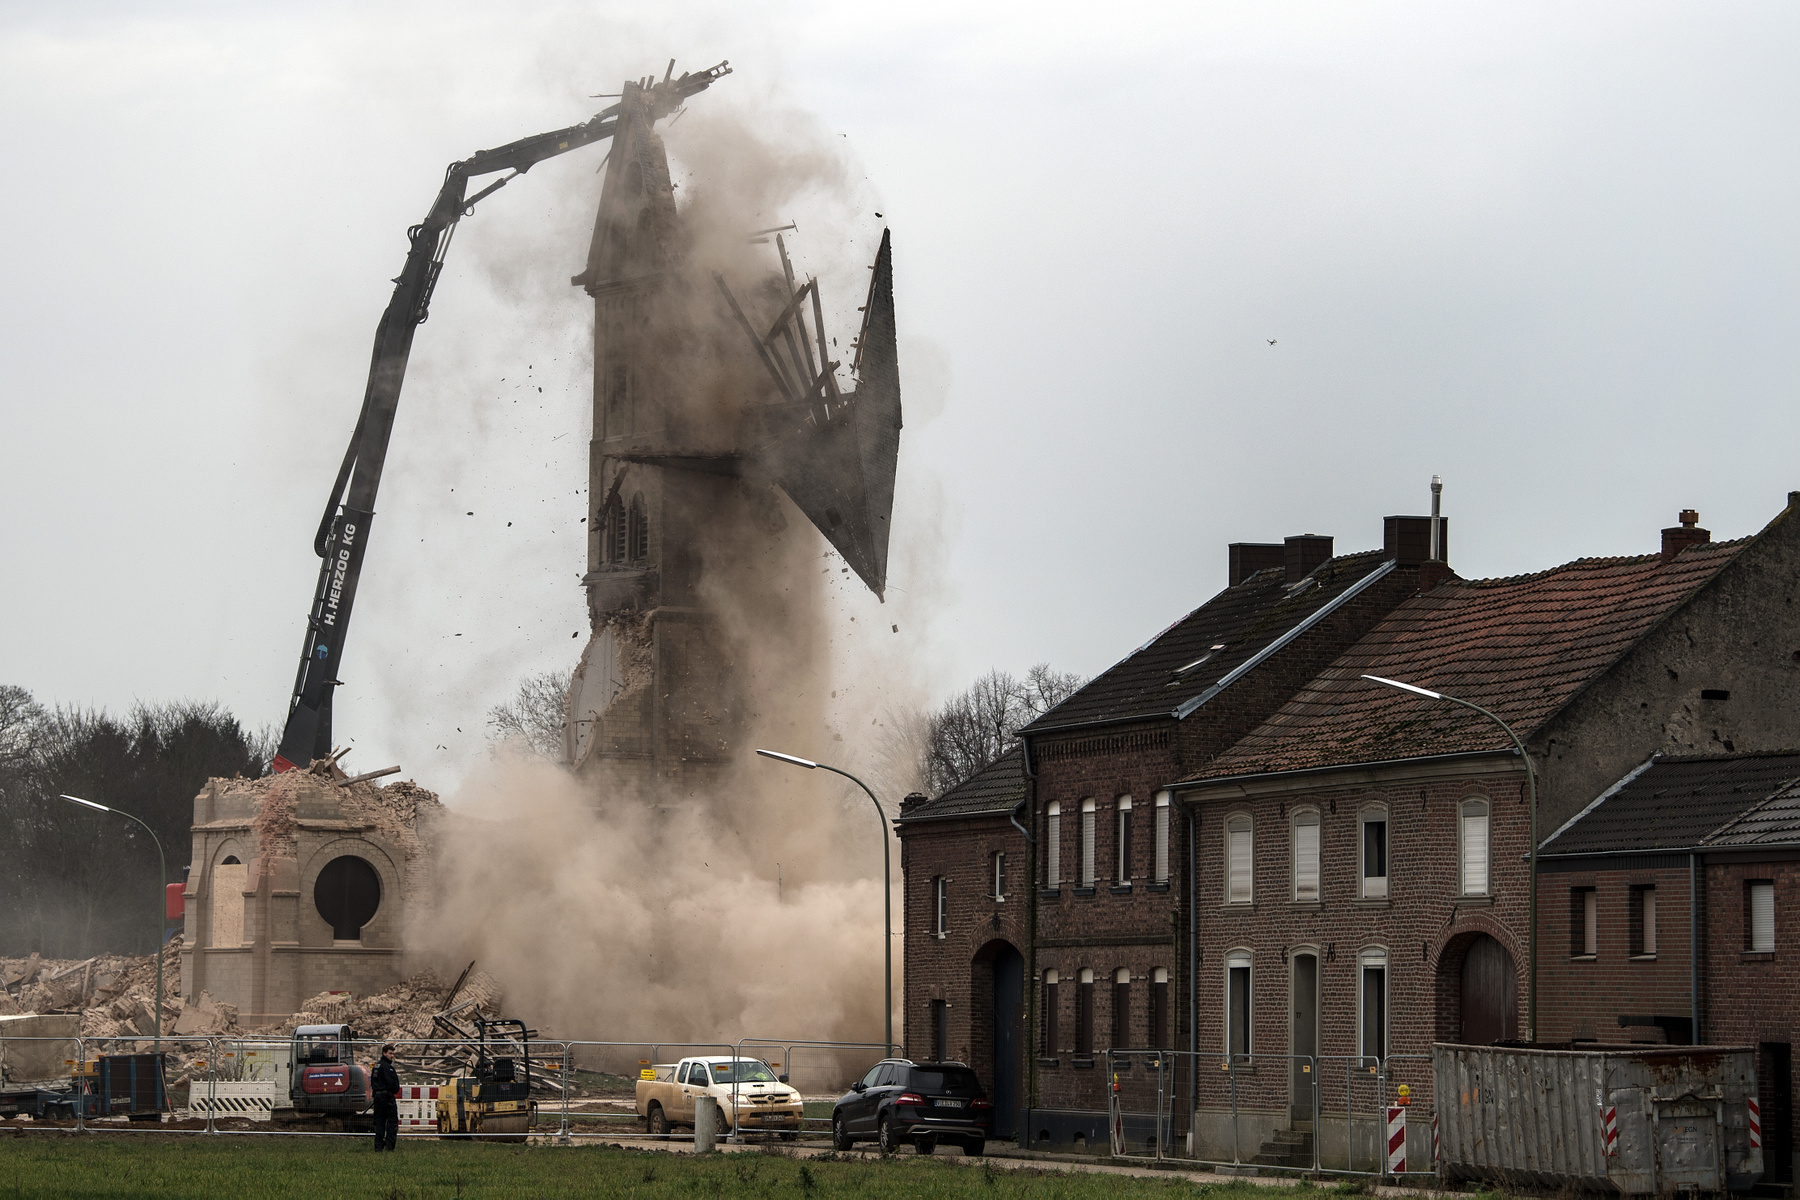 Boisdorf kastélyát is ledöntötték a lignitbányászat miatt

